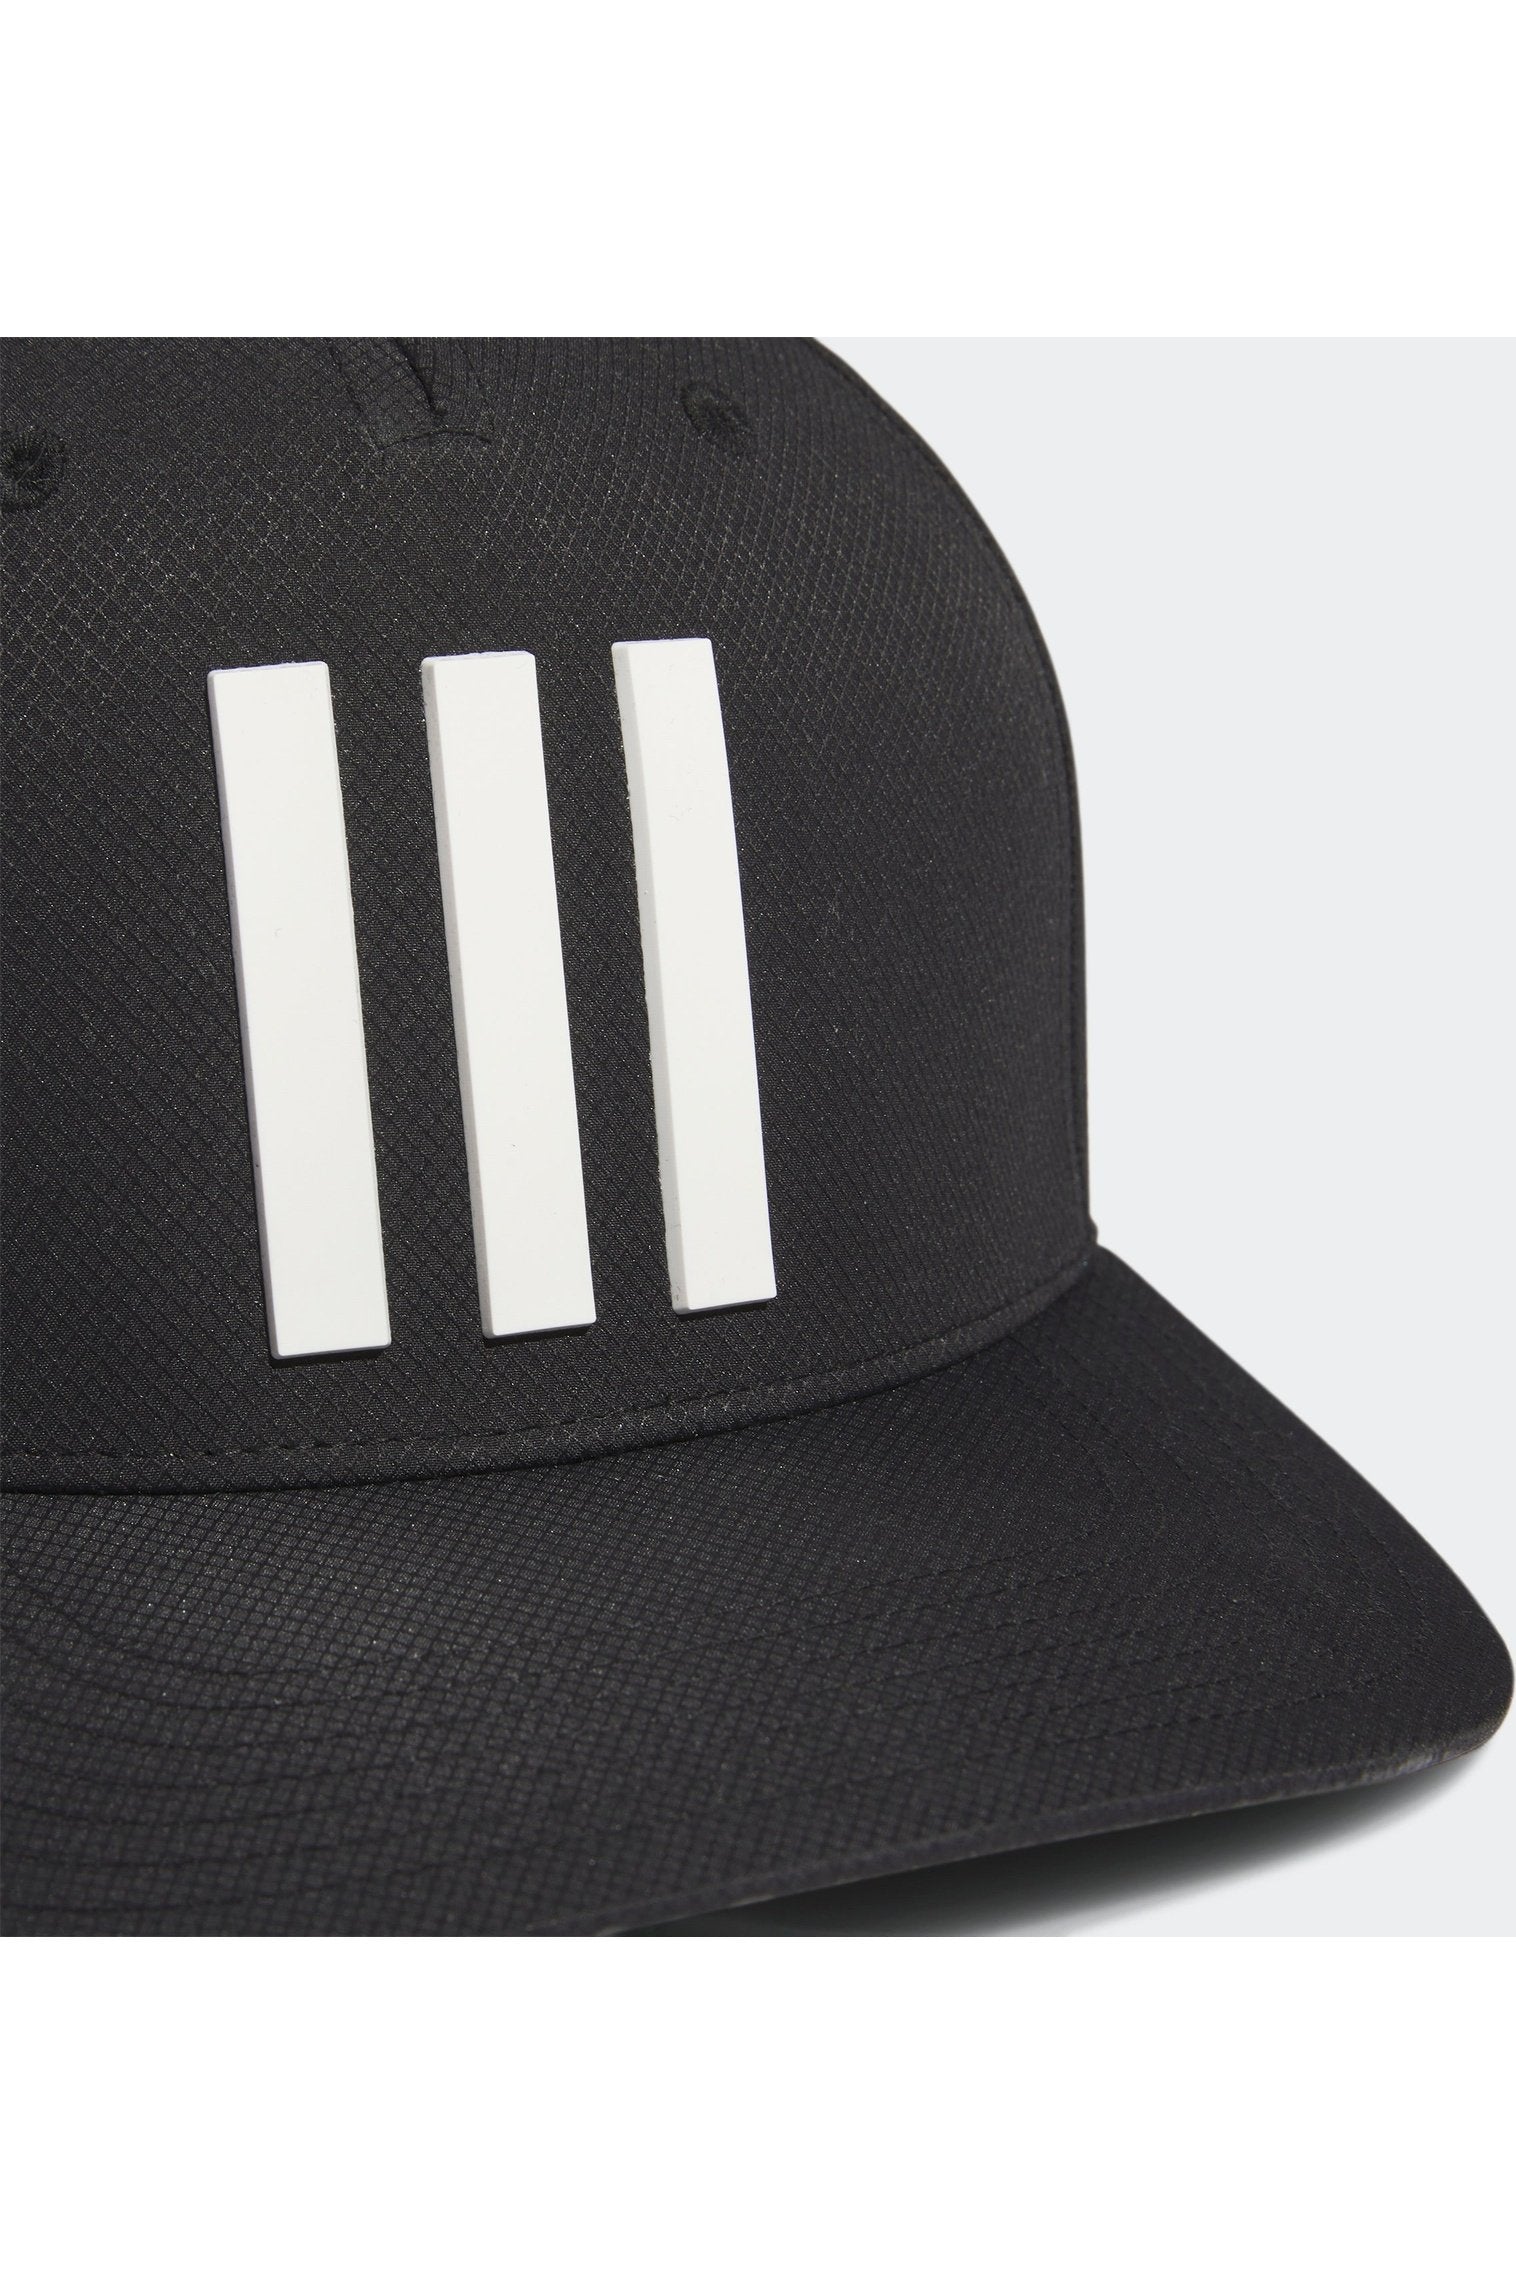 כובע 3-STRIPES TOUR בצבע שחור ולבן